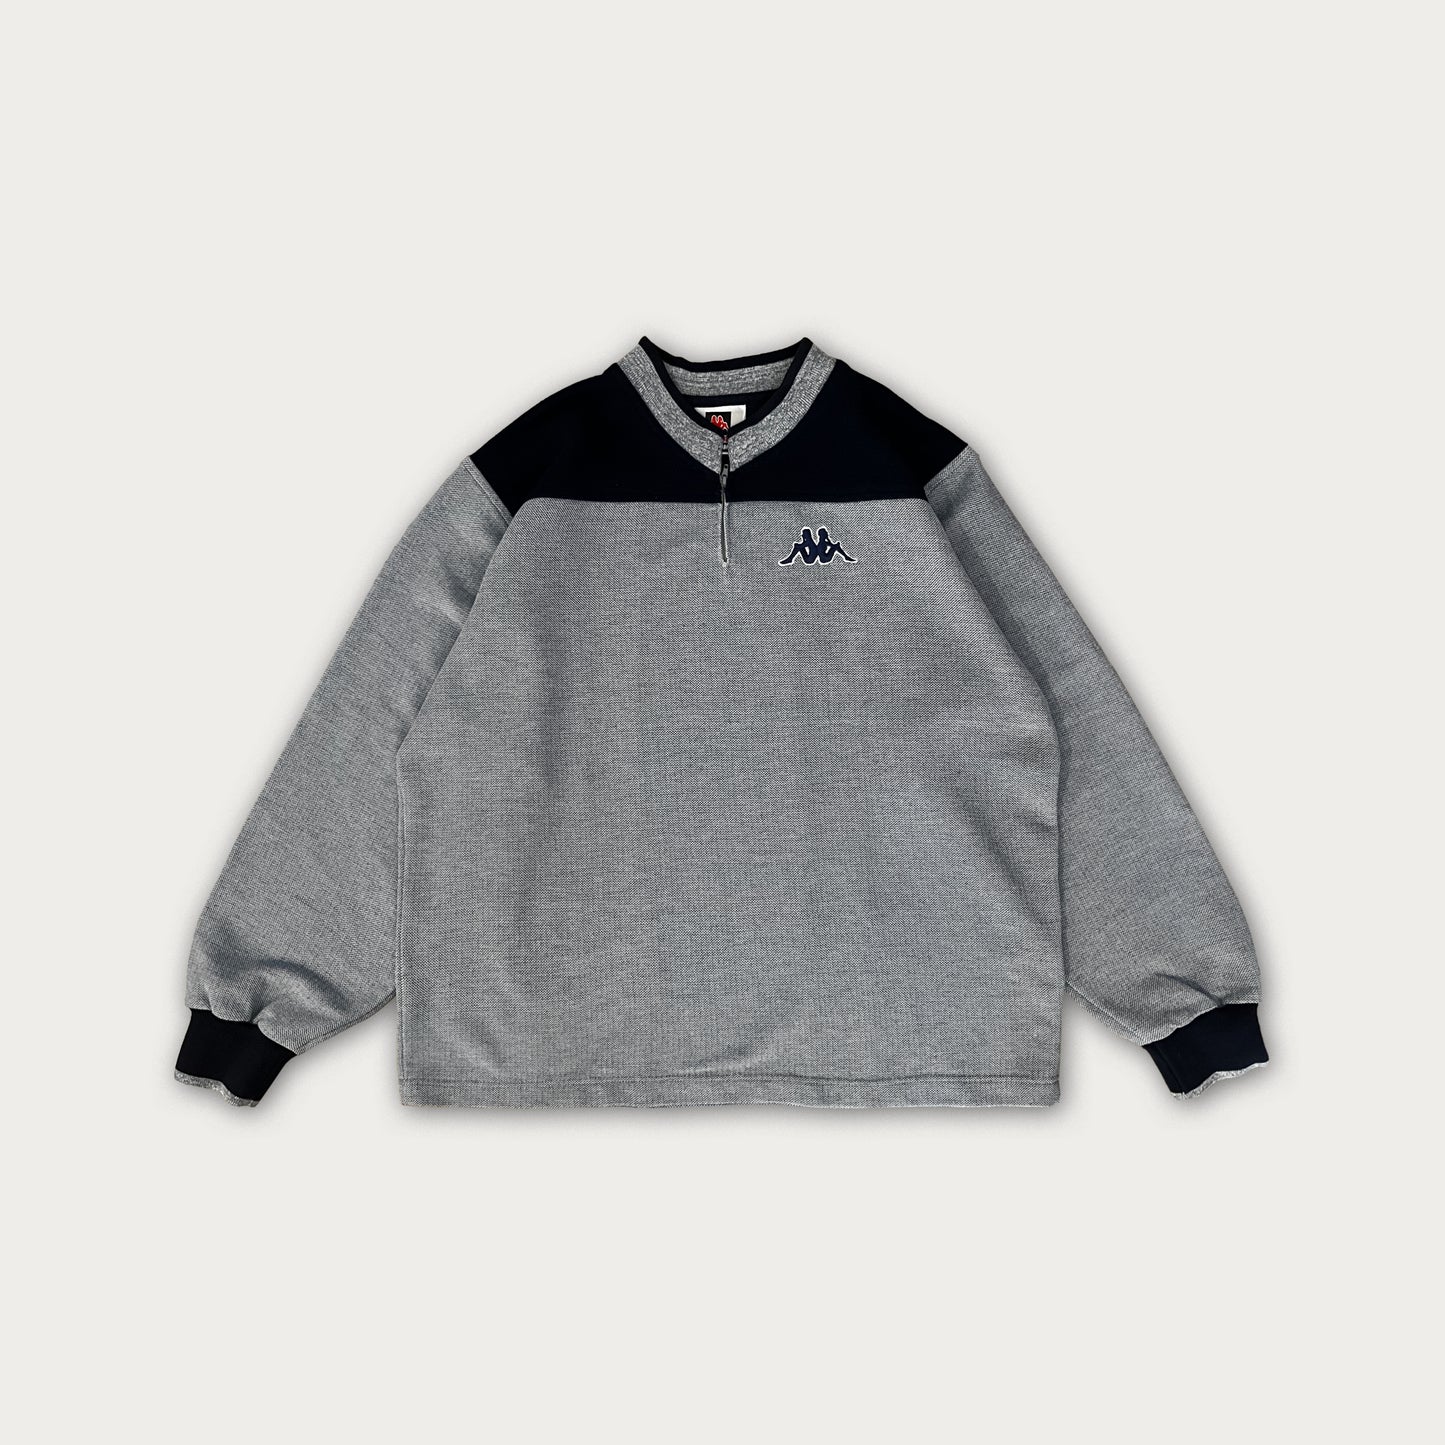 90s Vintage Kappa Sweatshirt